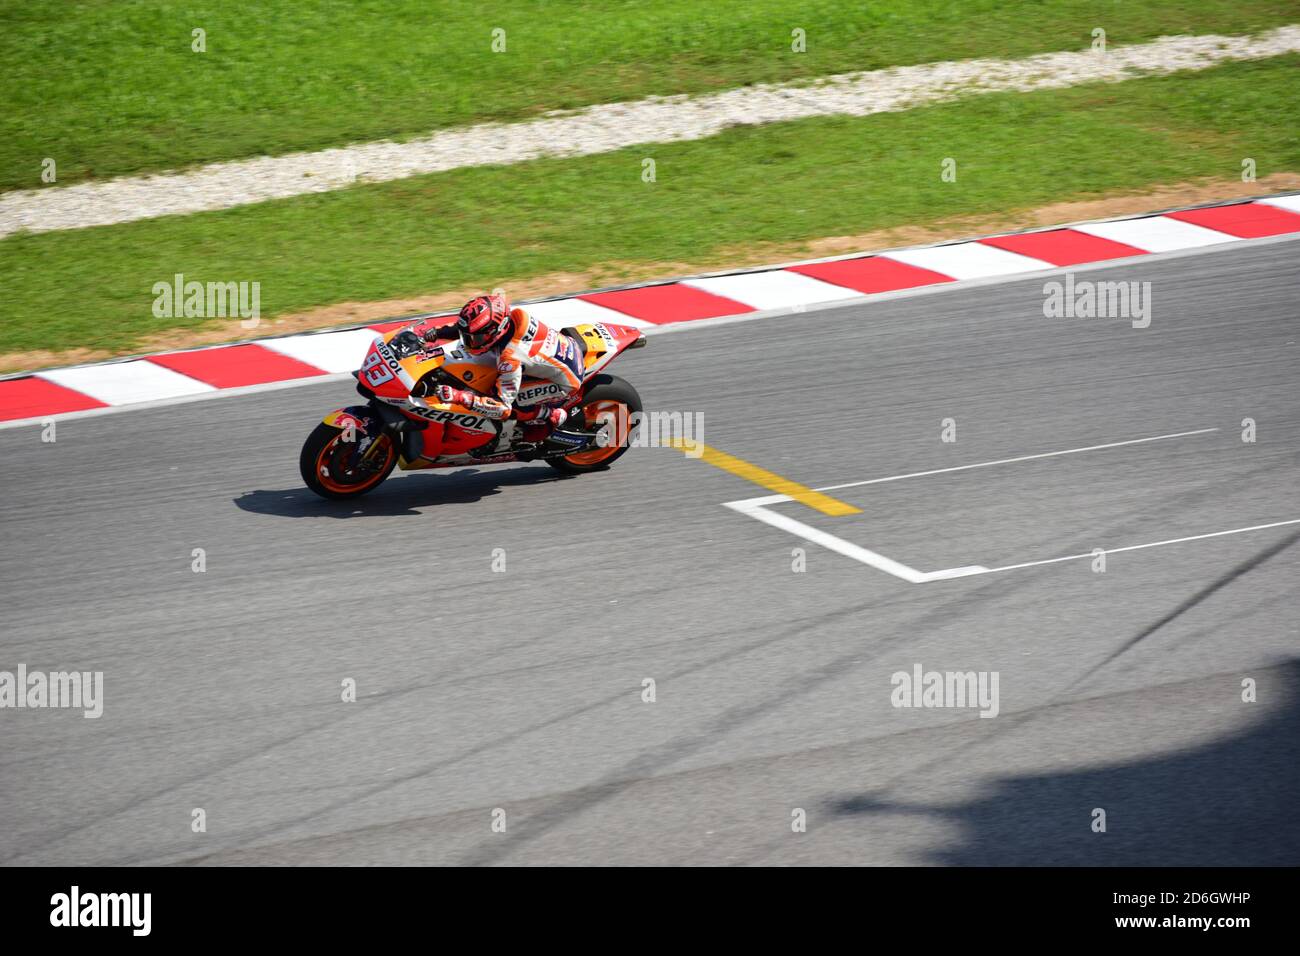 MotoGP rider Marc Marquez Stock Photo